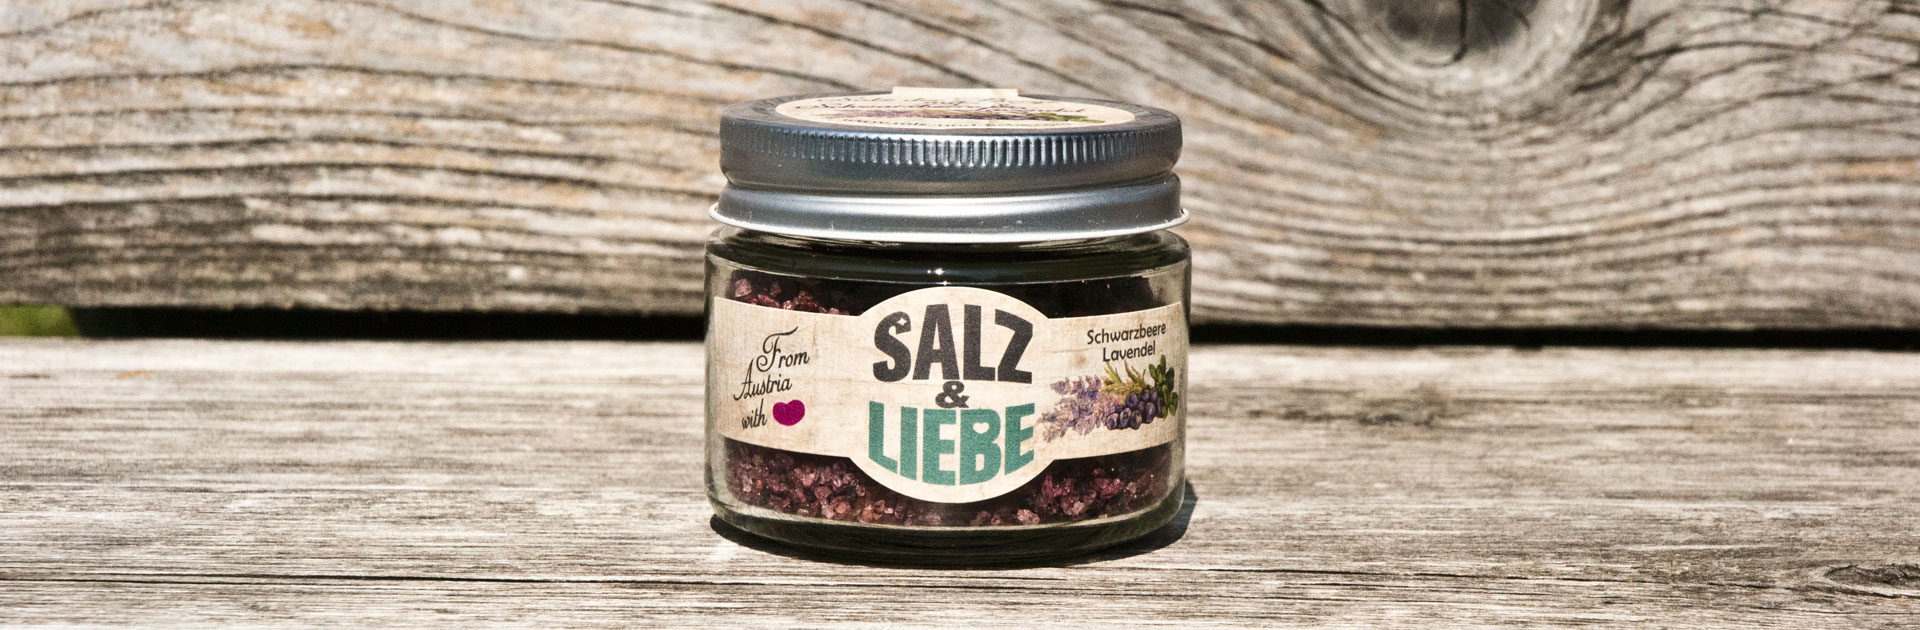 Salz und Liebe - Schwarzbeere Lavendel grobes Bergsalz